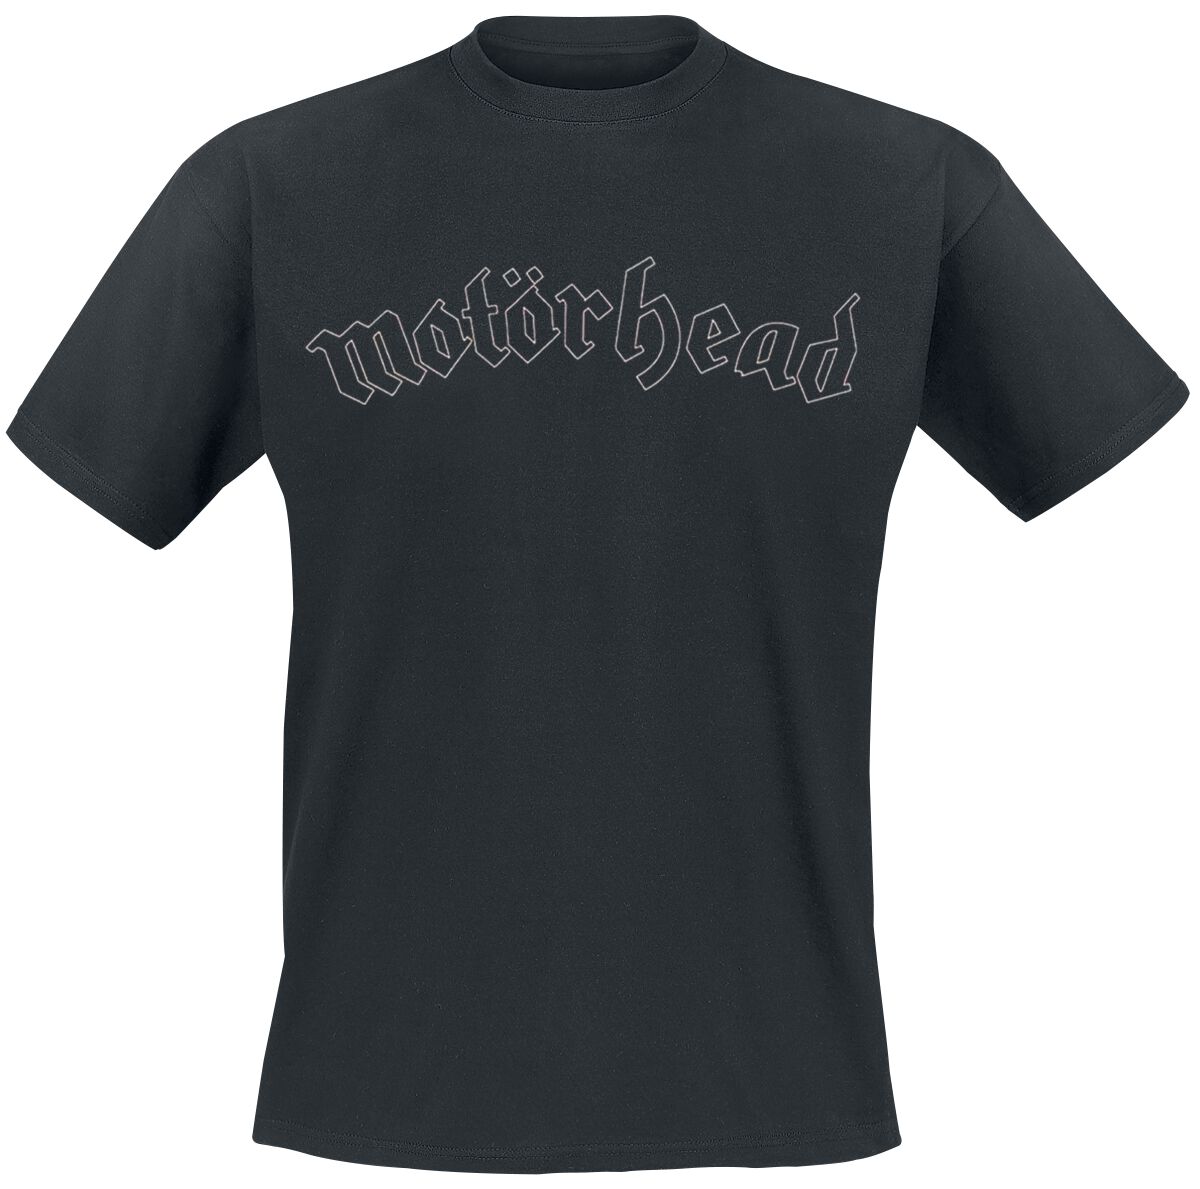 Motörhead T-Shirt - Undercover Sketch - S bis 5XL - für Männer - Größe 5XL - schwarz  - Lizenziertes Merchandise!